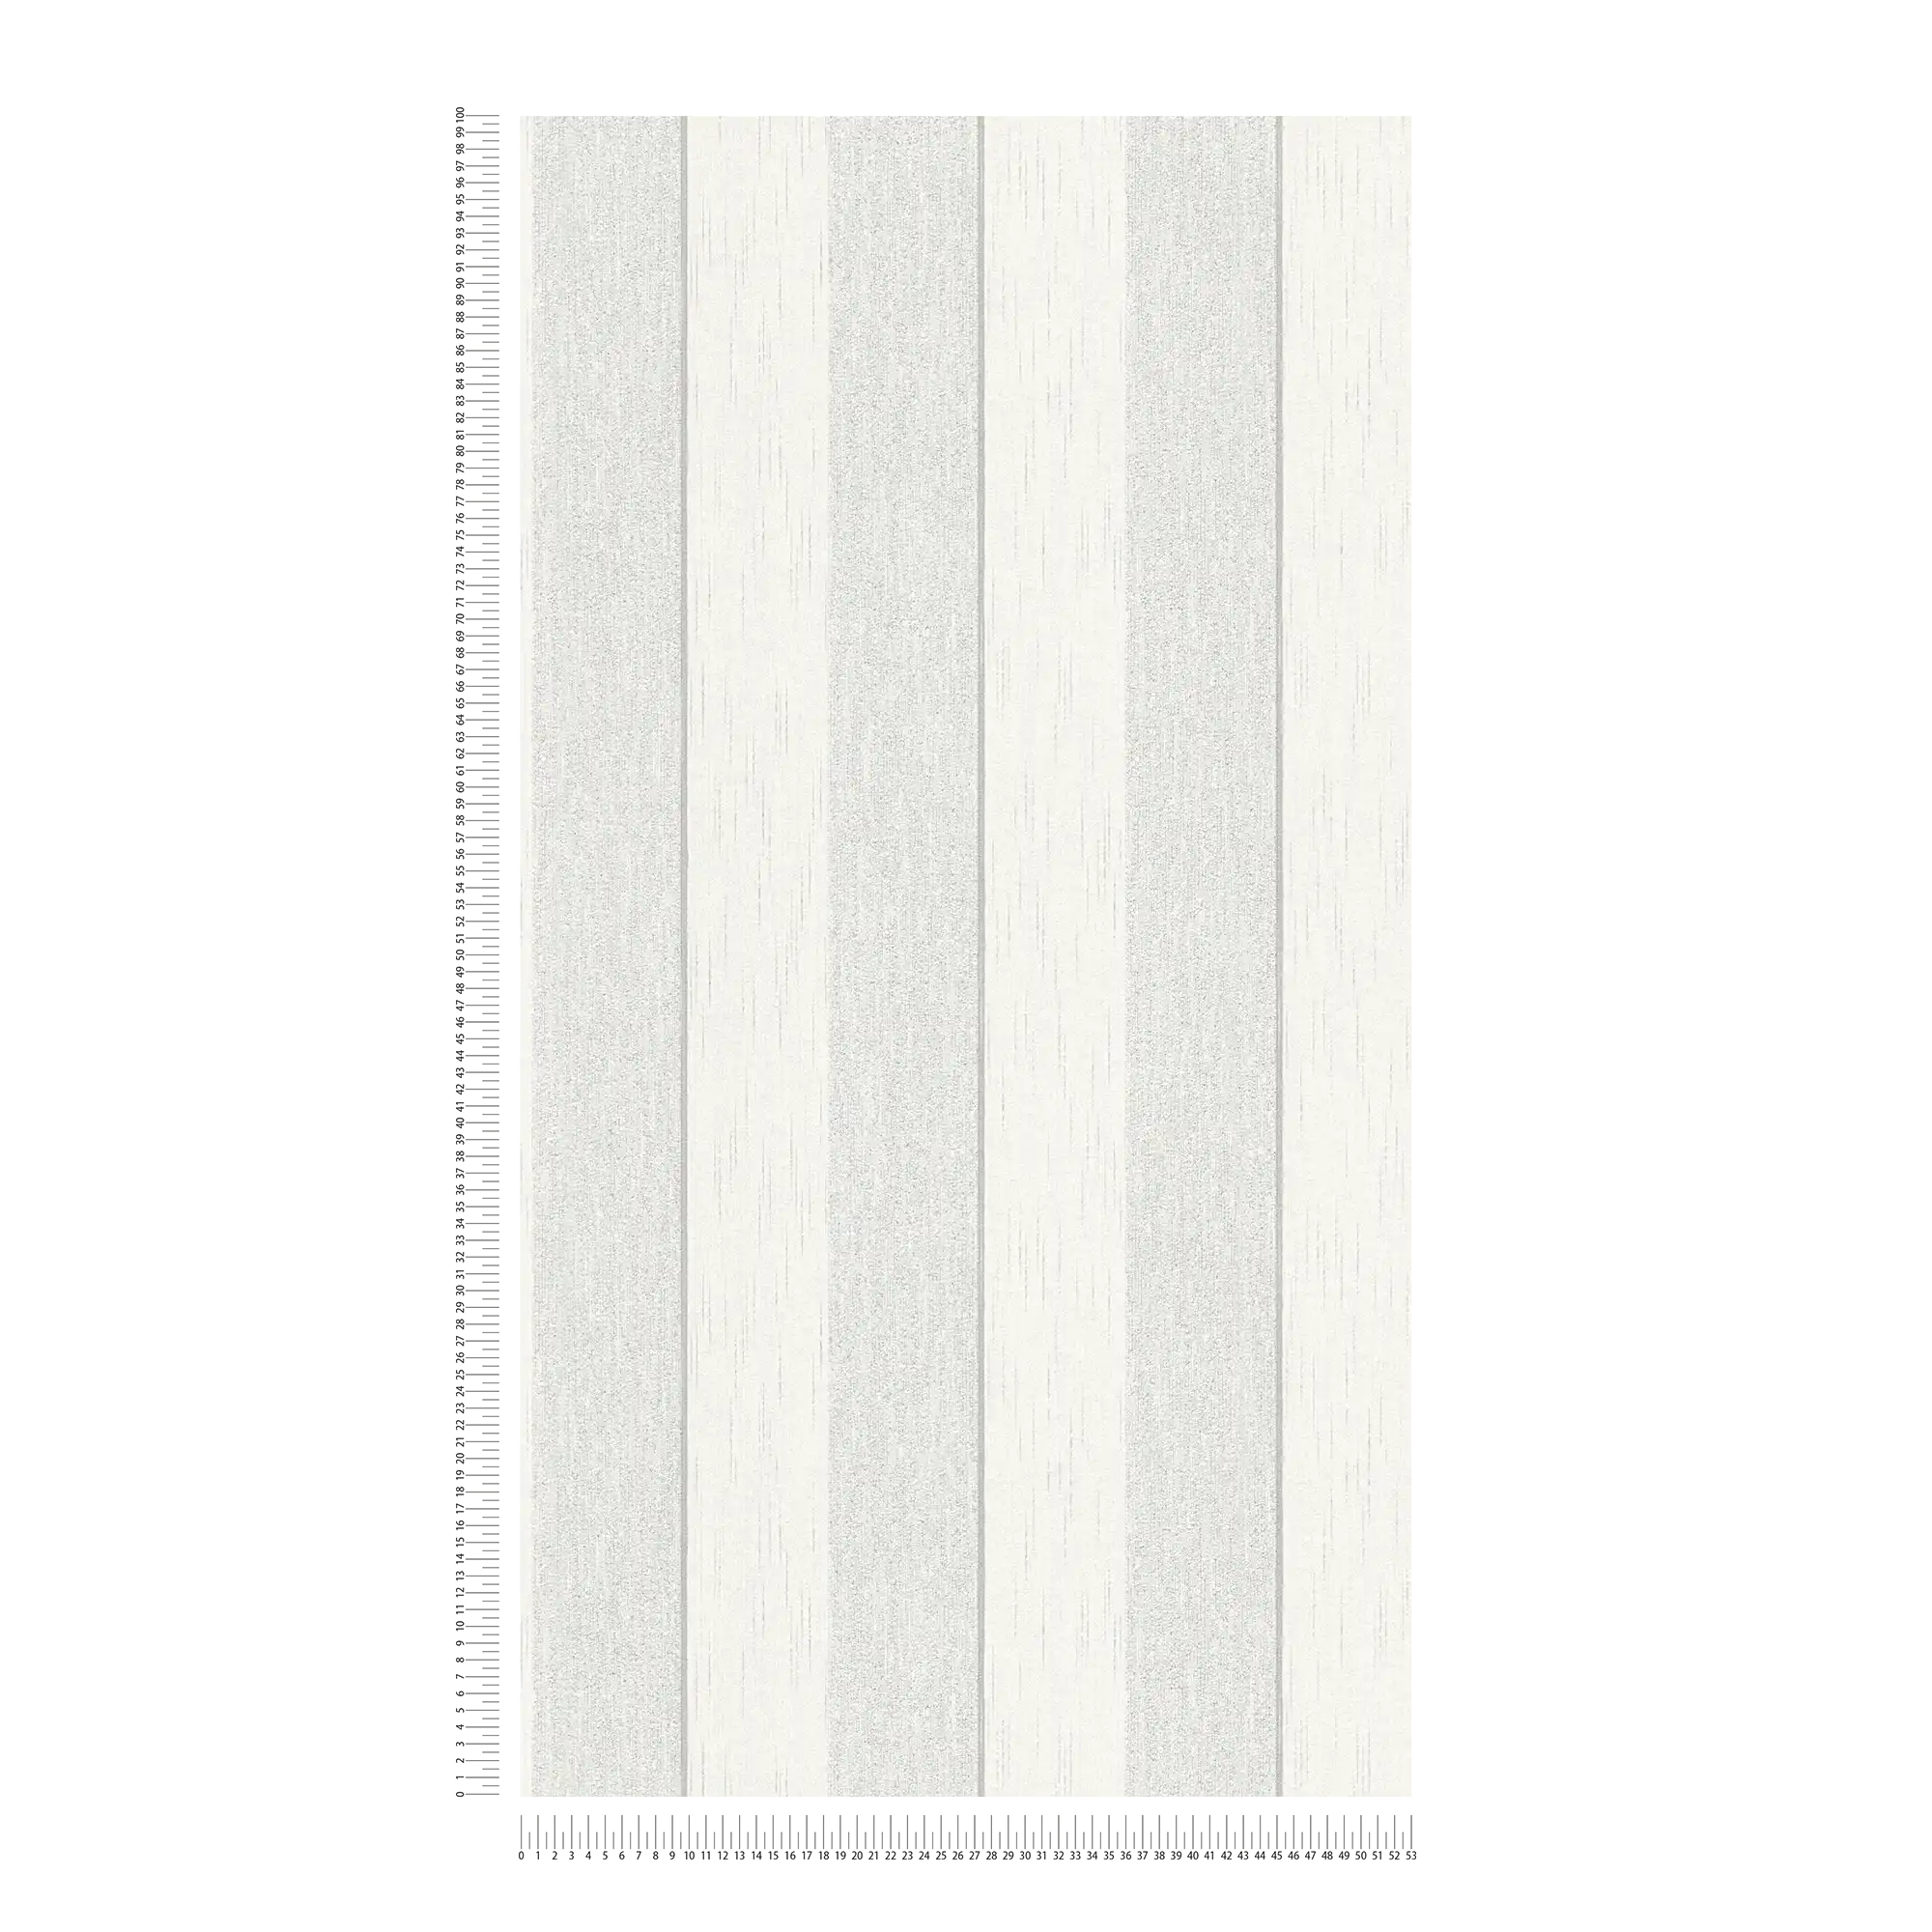             wallpaper texture effect stripes mottled - grey, white
        